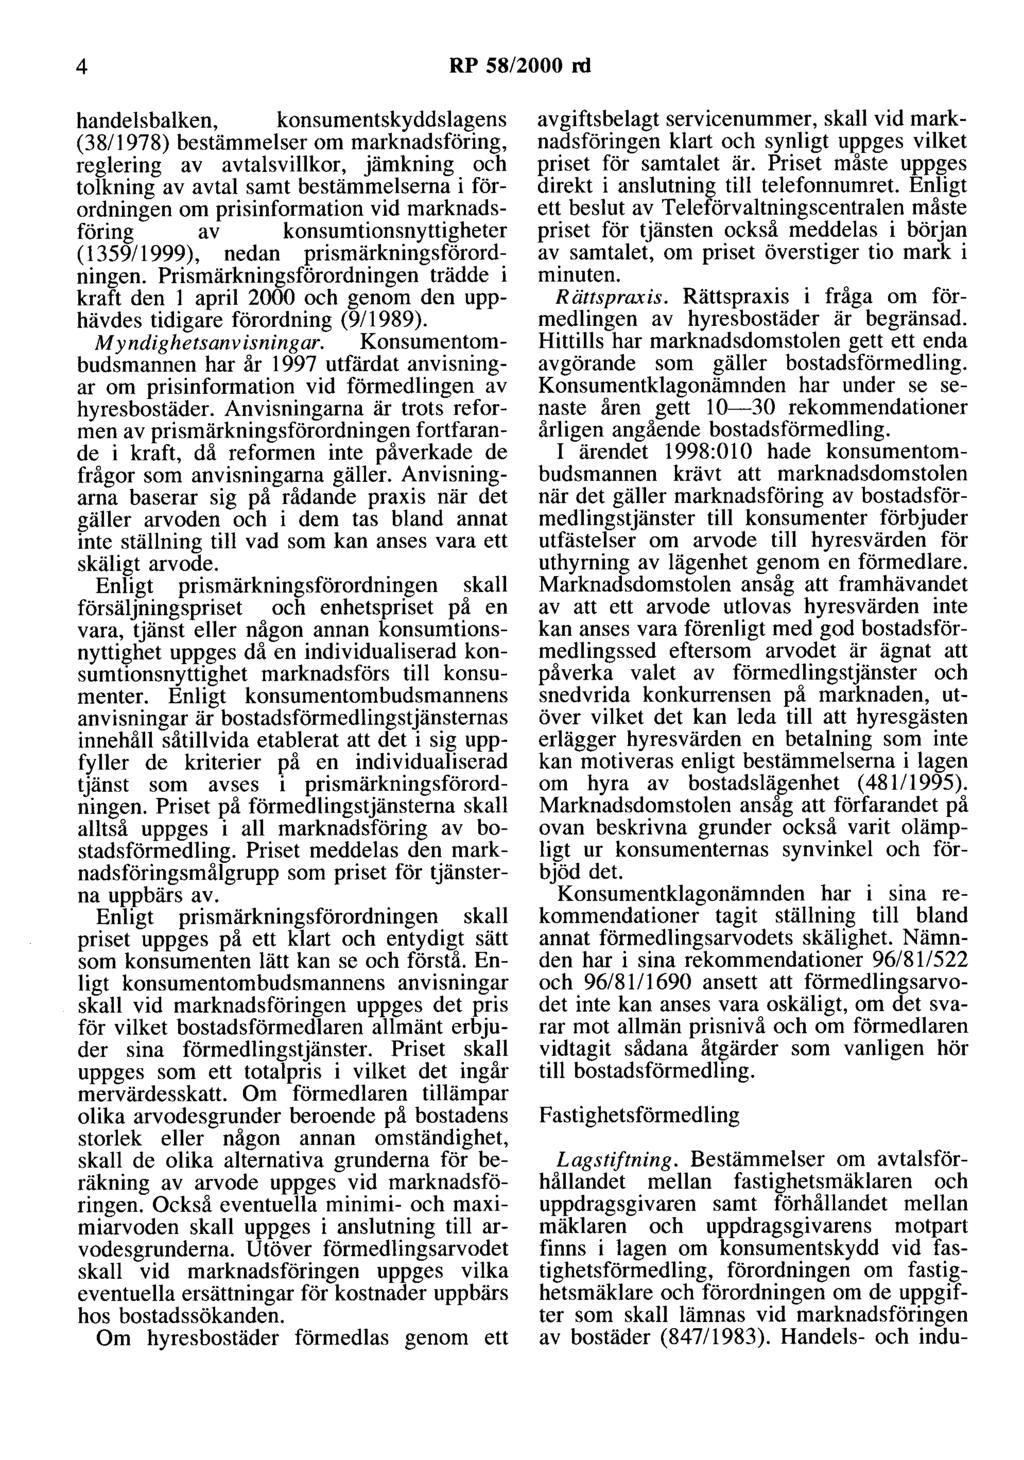 4 RP 58/2000 rd handelsbalken, konsumentskyddslagens (38/1978) bestämmelser om marknadsföring, reglering av avtalsvillkor, jämkning och tolkning av avtal samt bestämmelserna i förordningen om